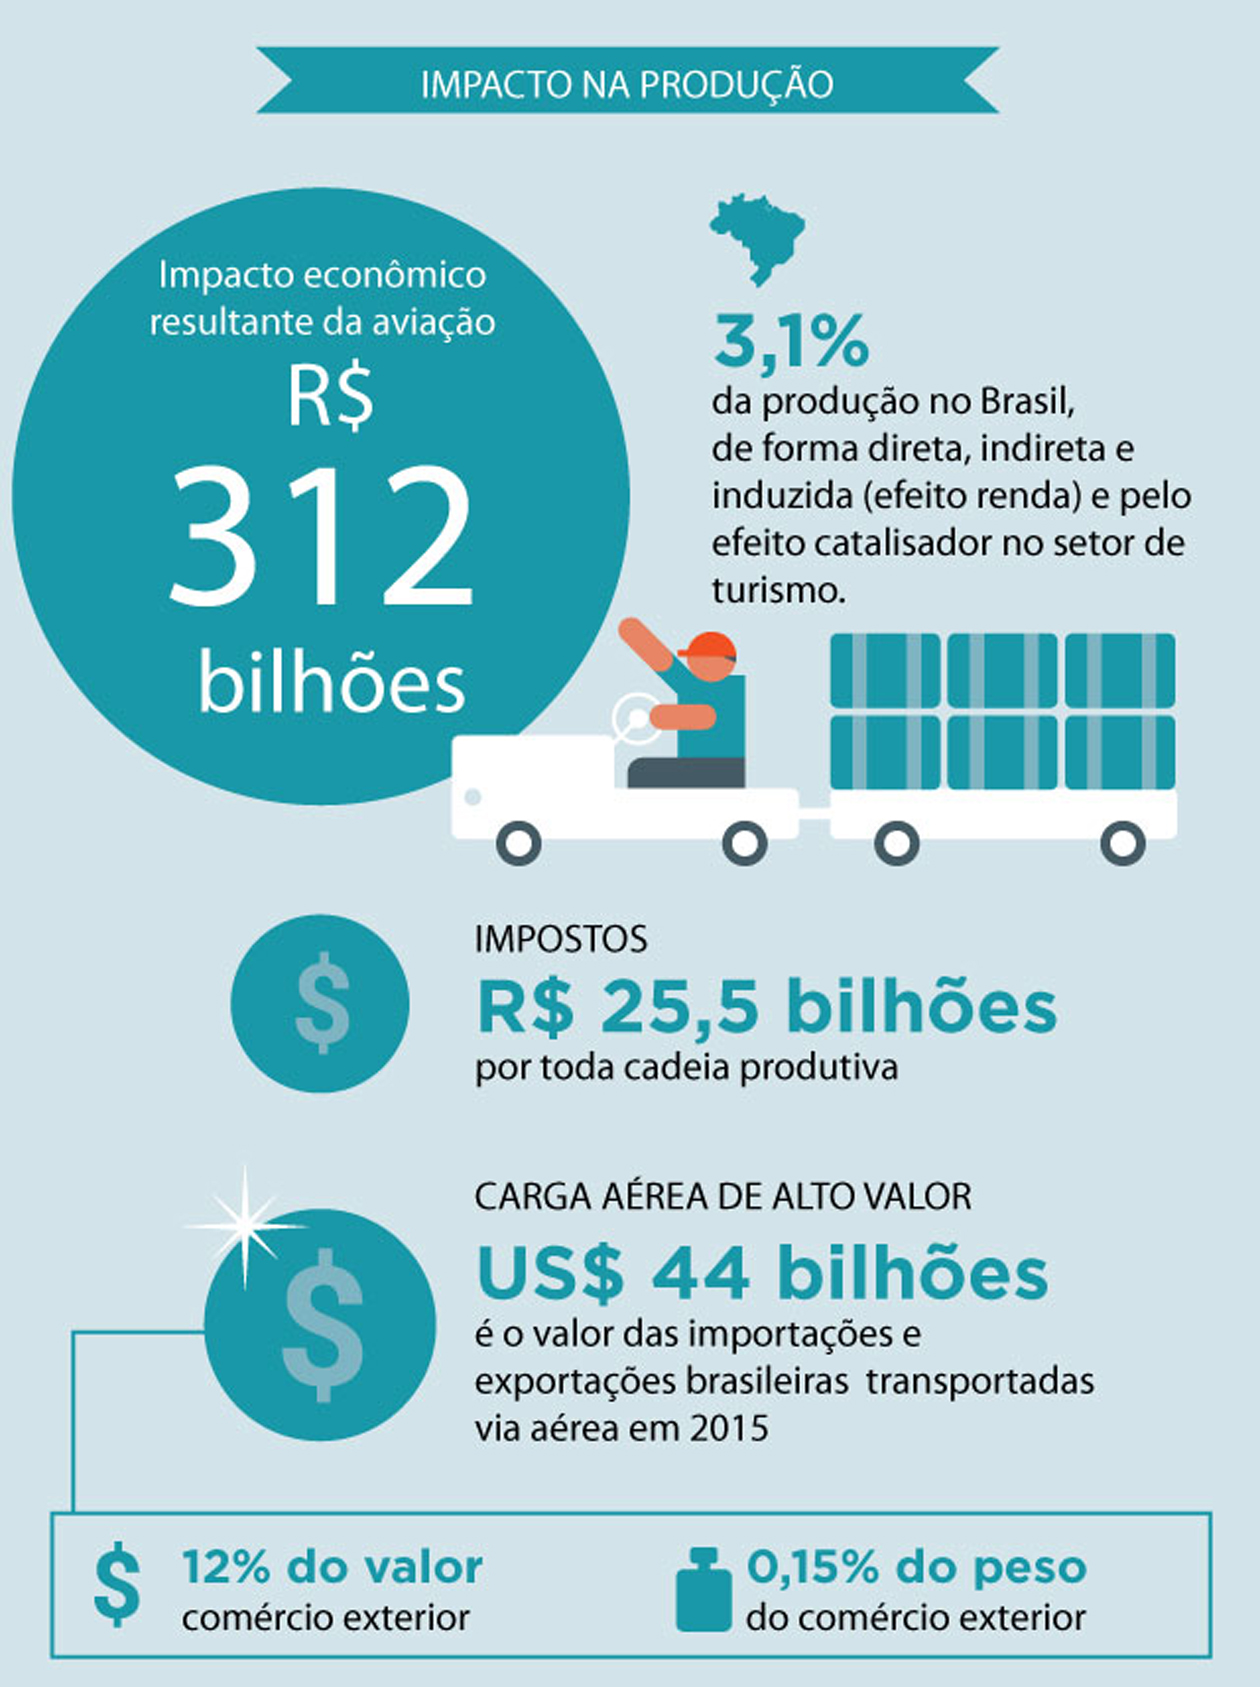 Fonte: Estudo Voar por mais Brasil - Benefícios da aviação nos estados, da Abear